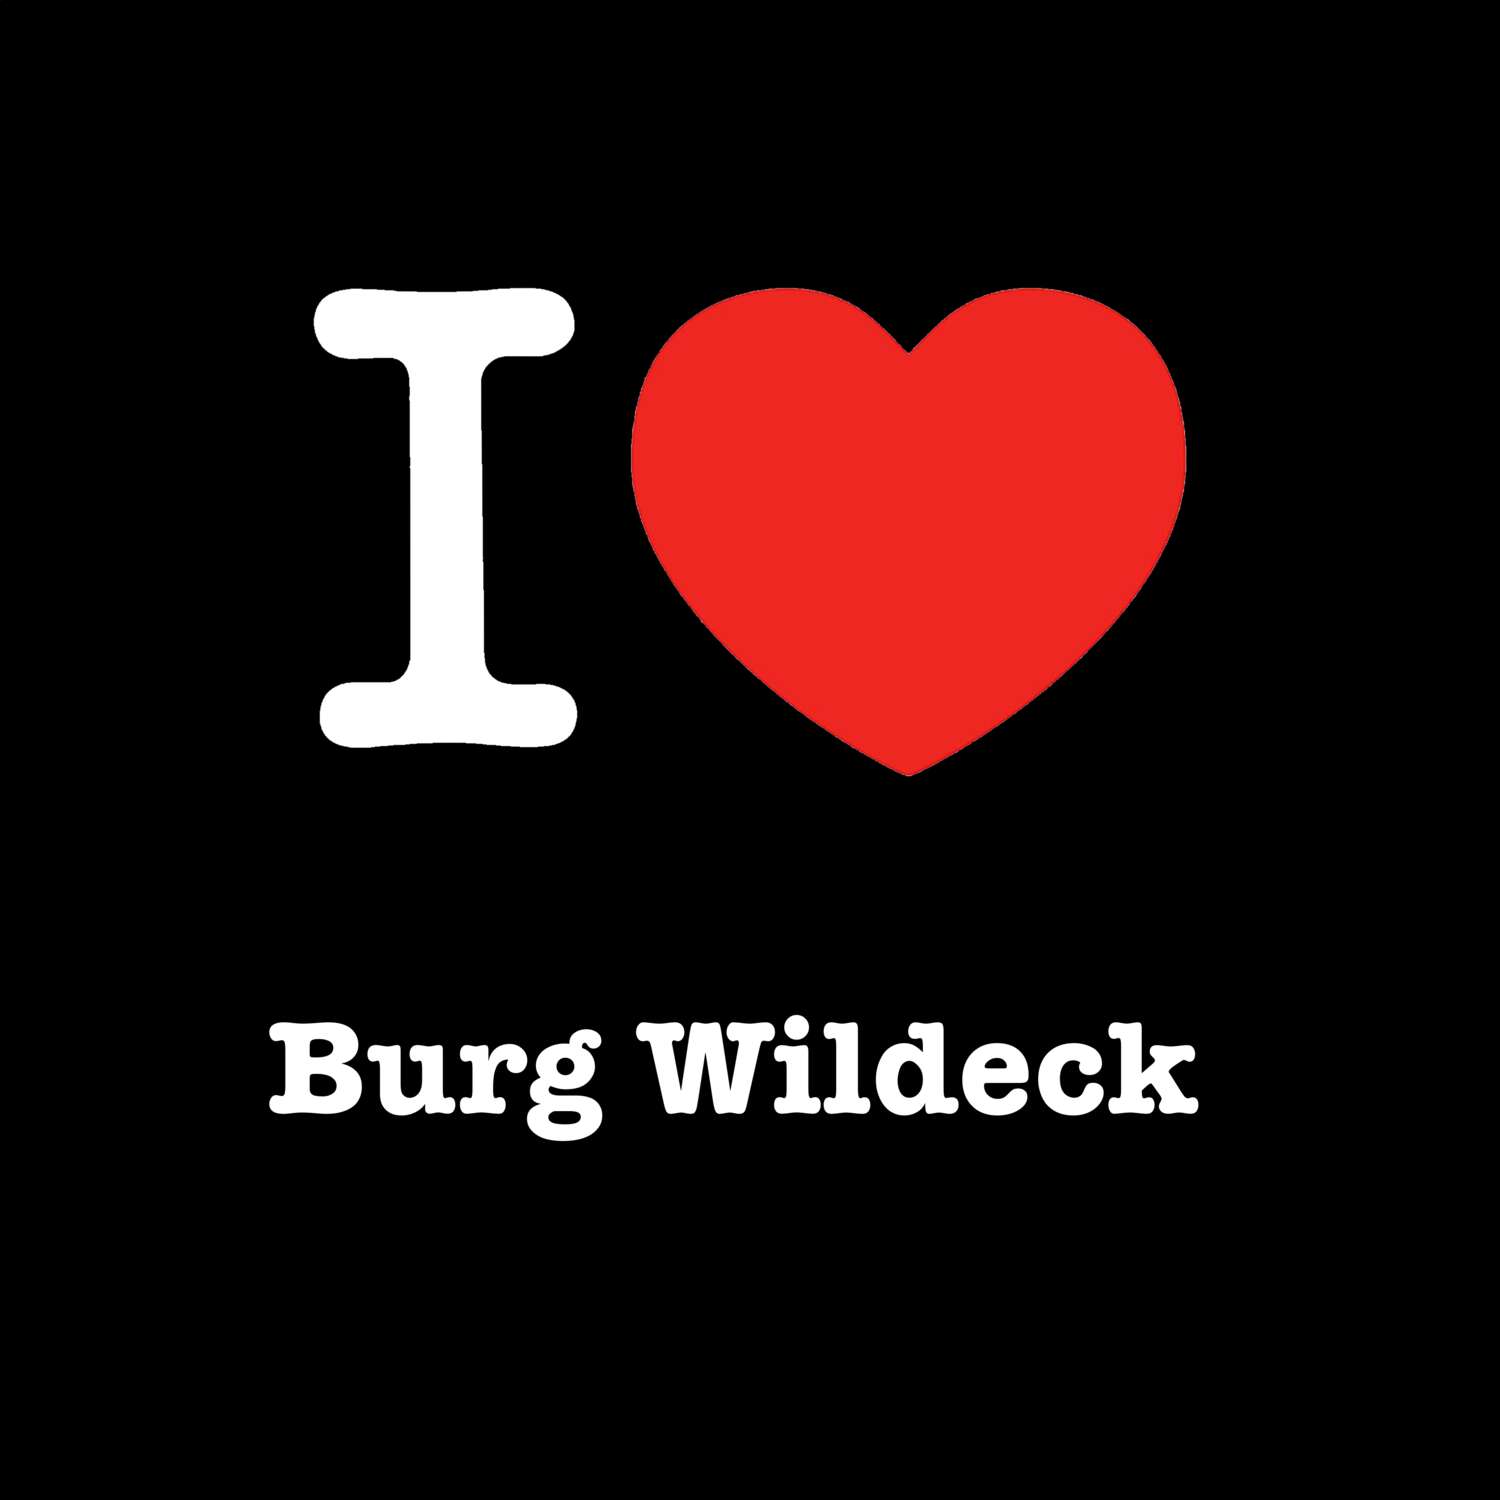 Burg Wildeck T-Shirt »I love«